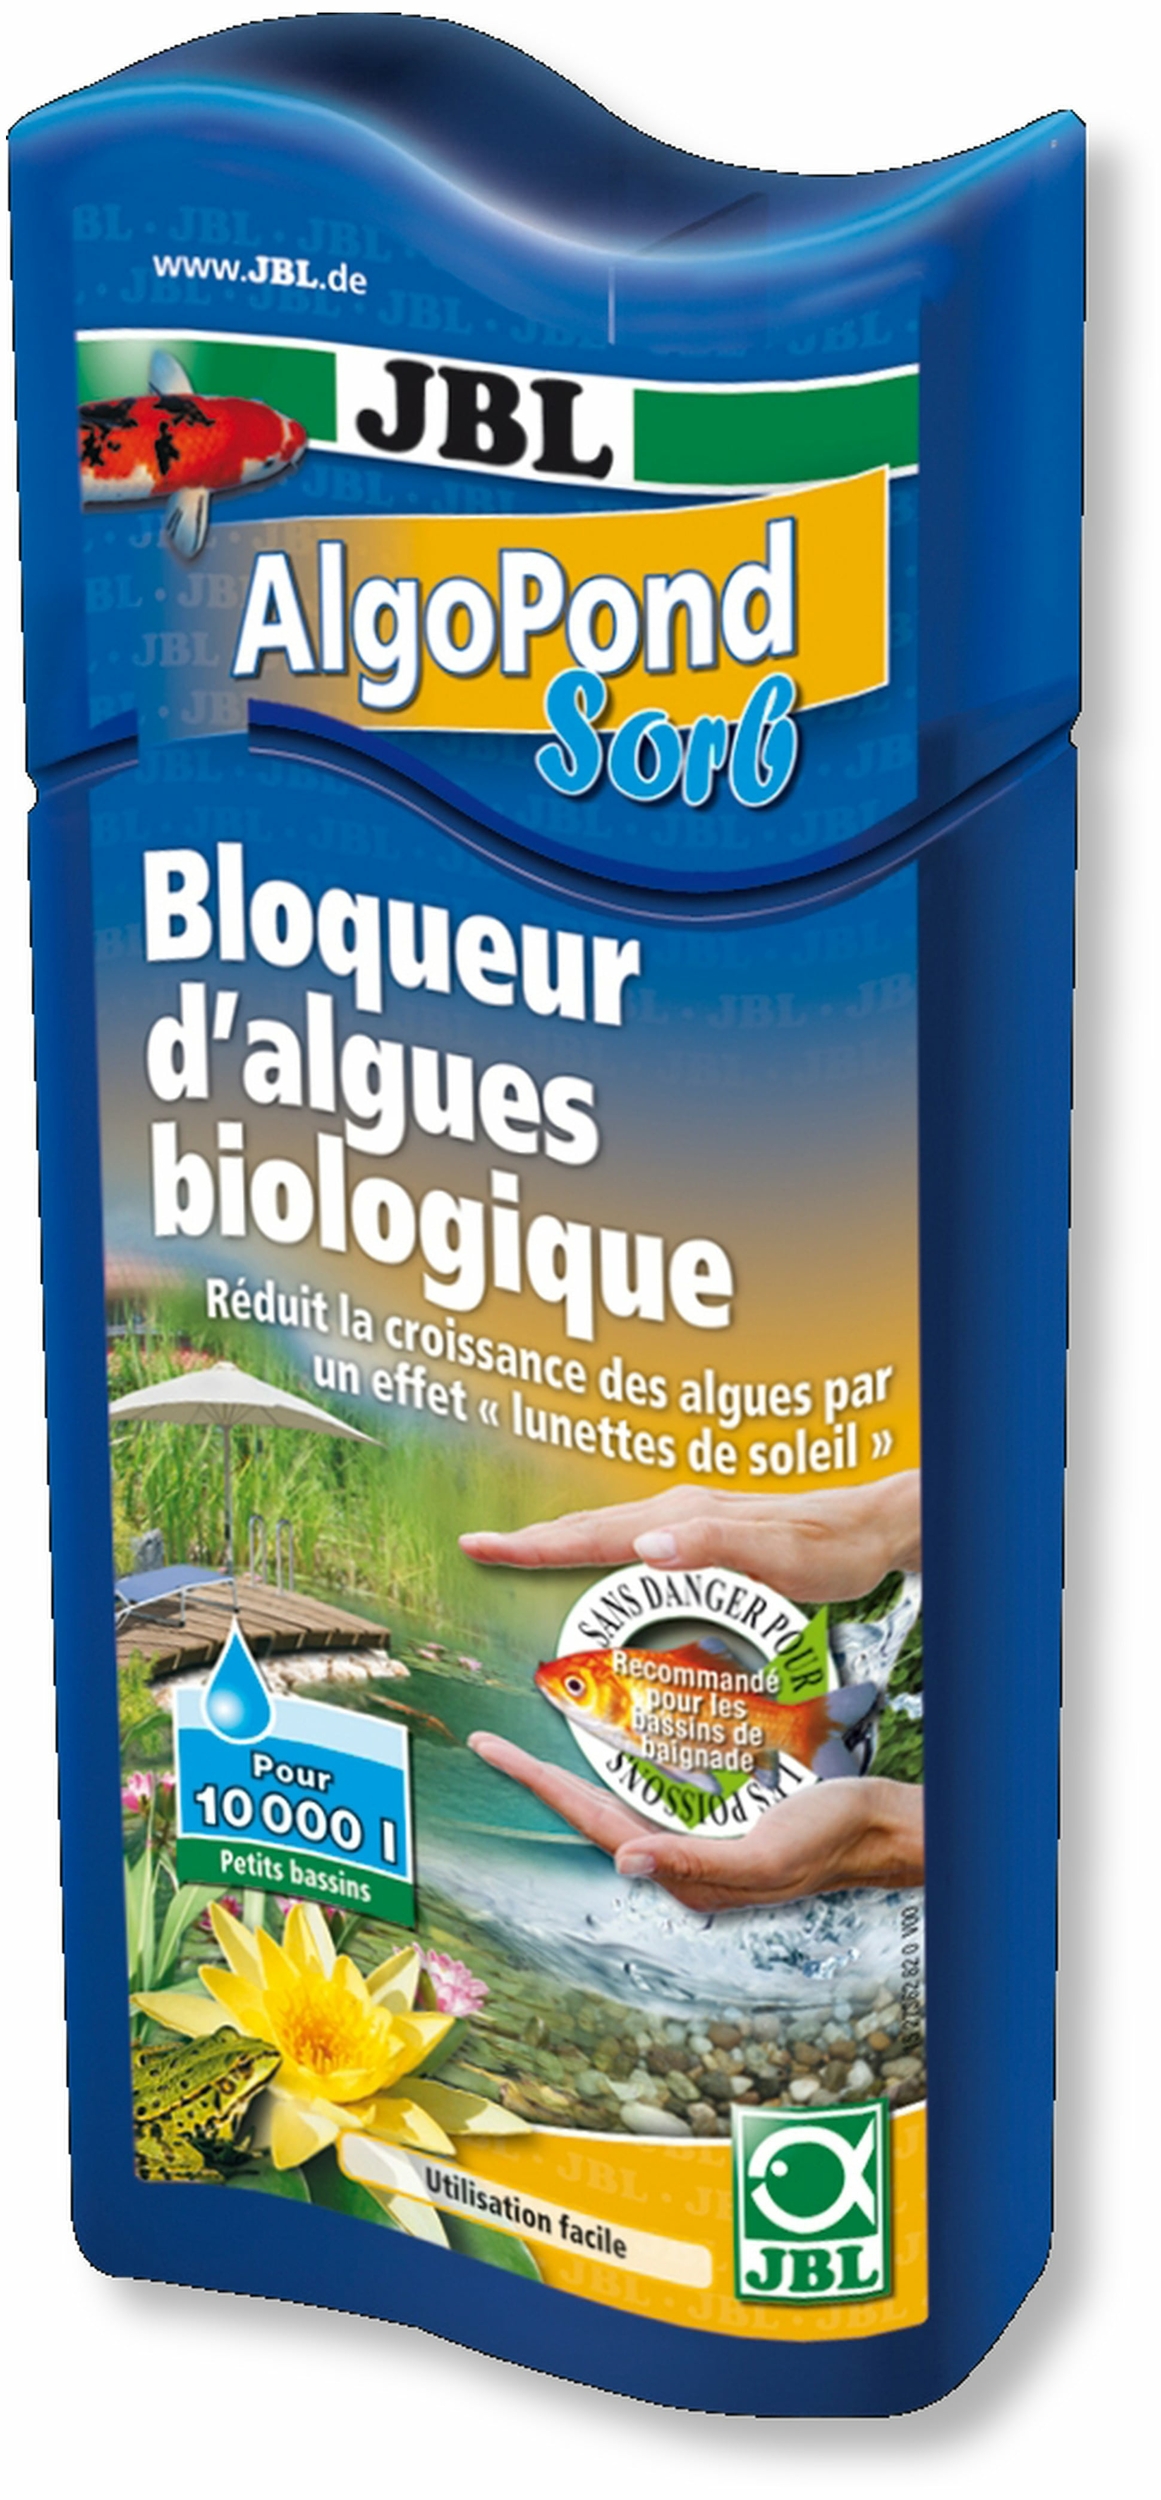 JBL AlgoPond Sorb 500 ml bloqueur biologique contre les algues pour la réduction de leur croissance